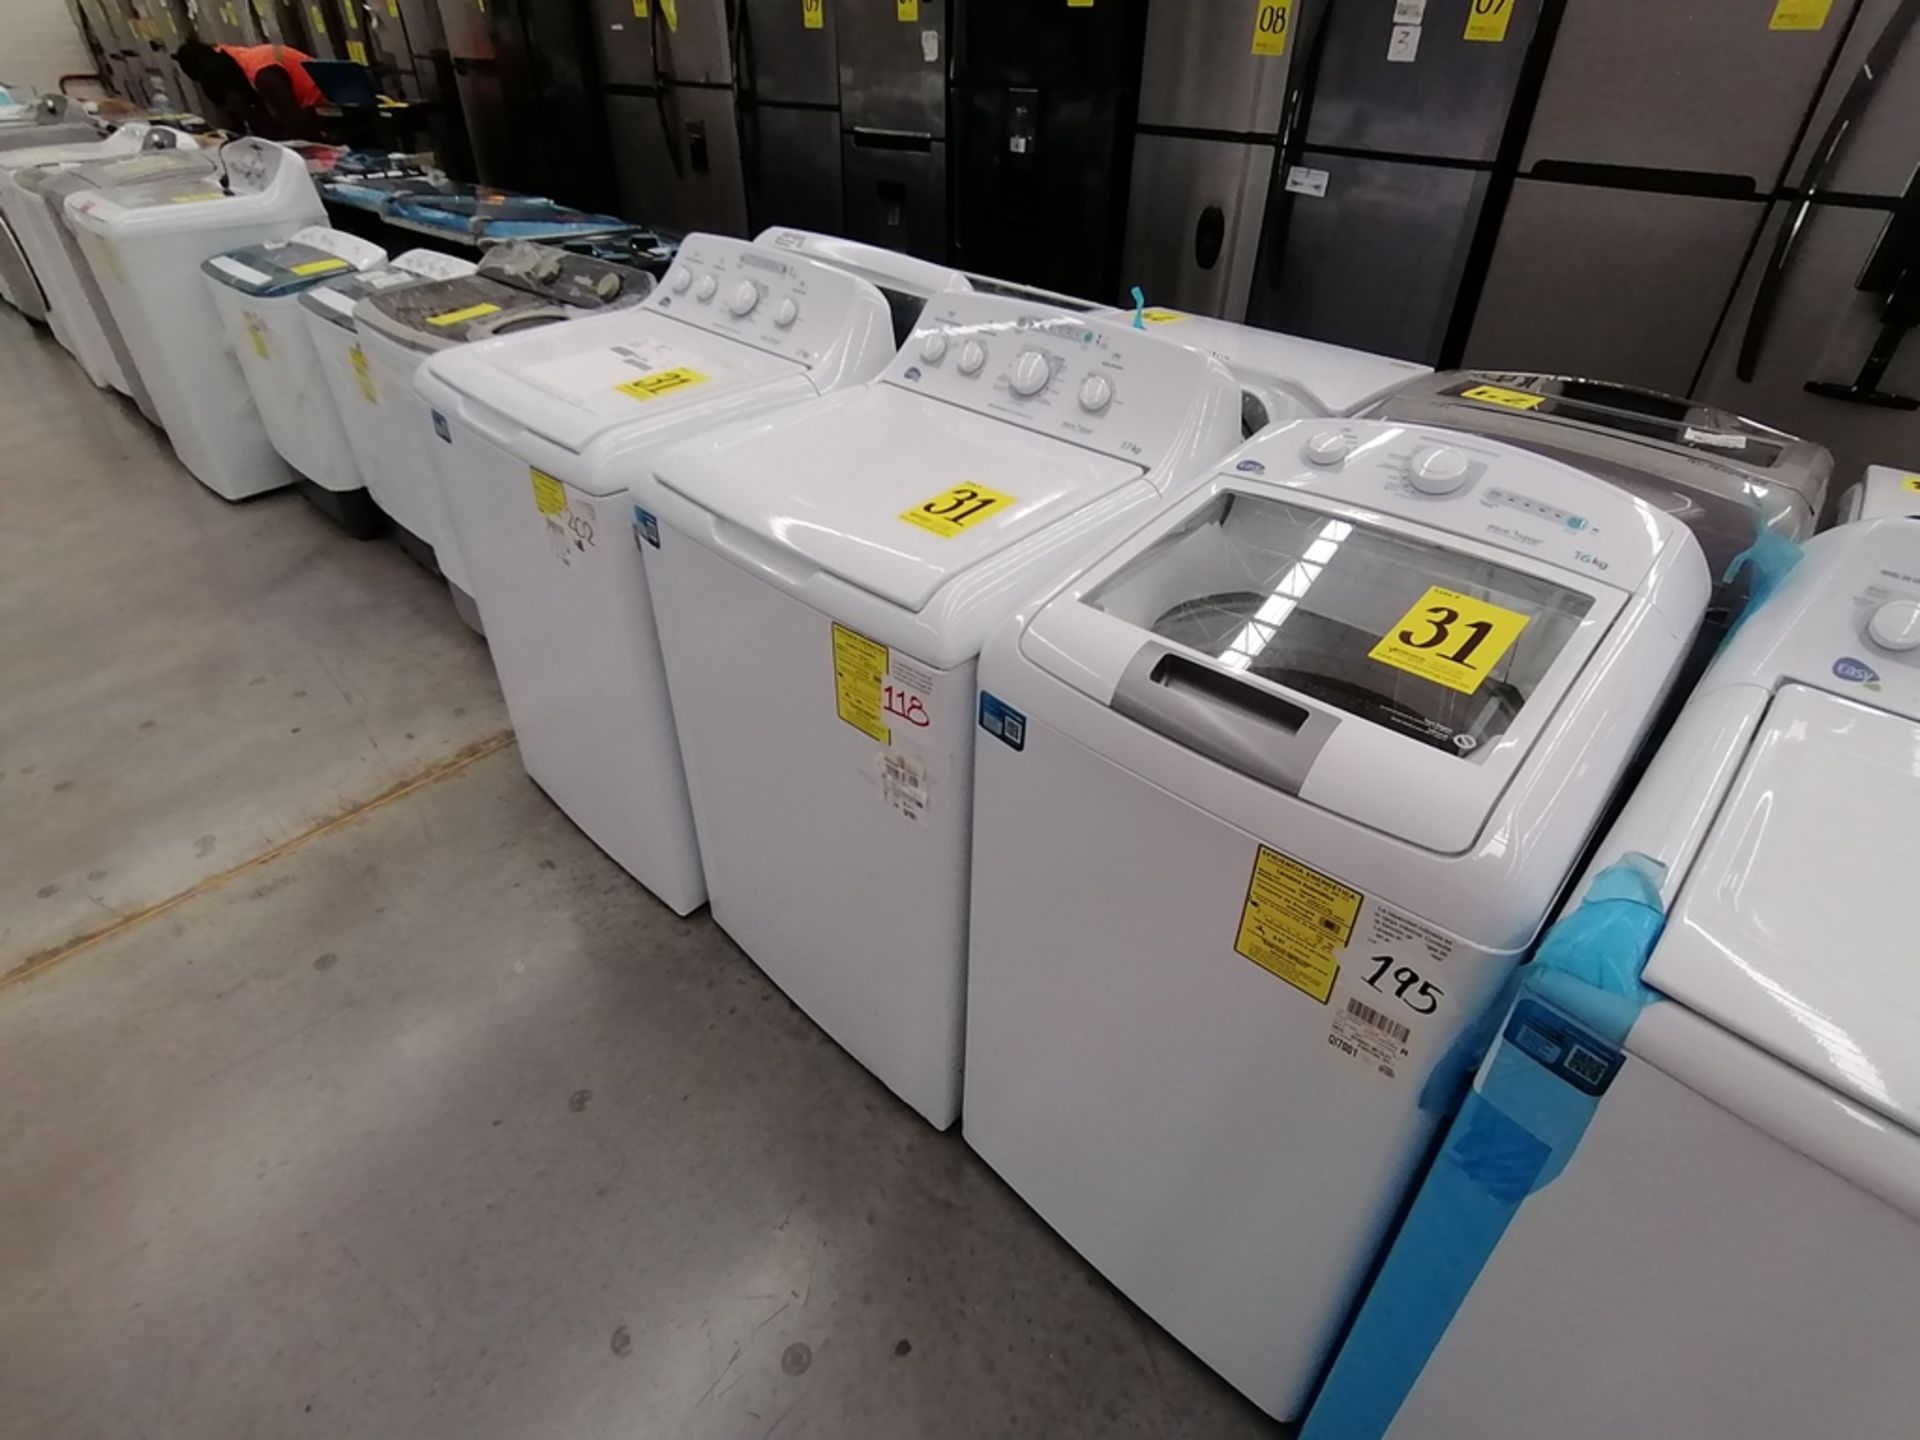 Lote de 3 lavadoras contiene: 1 Lavadora de 17KG, Marca Easy, Modelo LEA77114CBAB03, Serie 2105S522 - Image 2 of 30